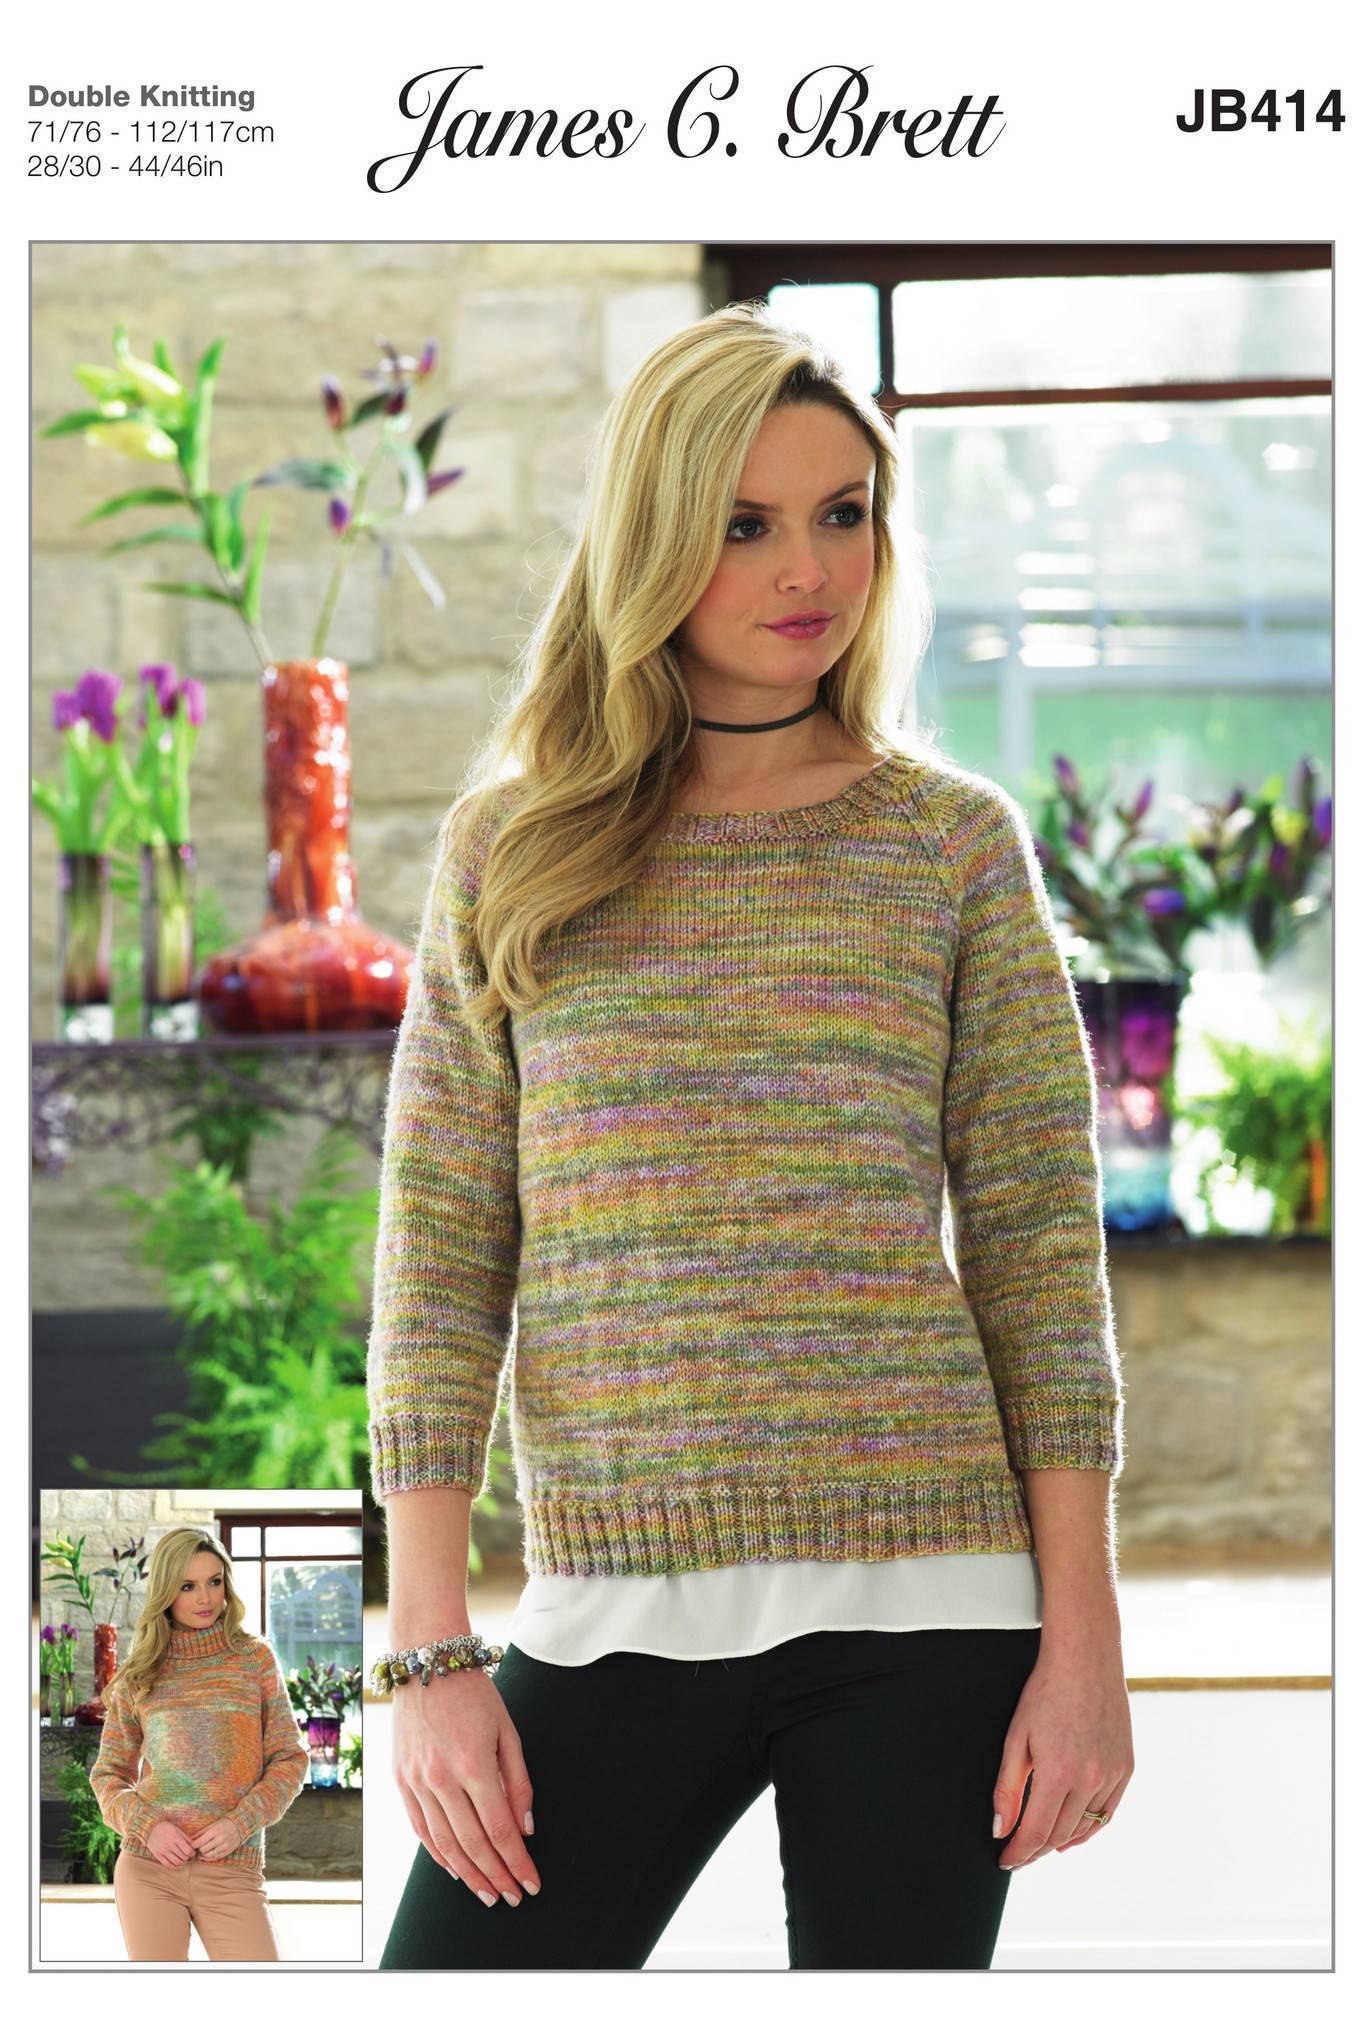 Sweaters in James C. Brett Stonewash DK (JB414) | The Knitting Network